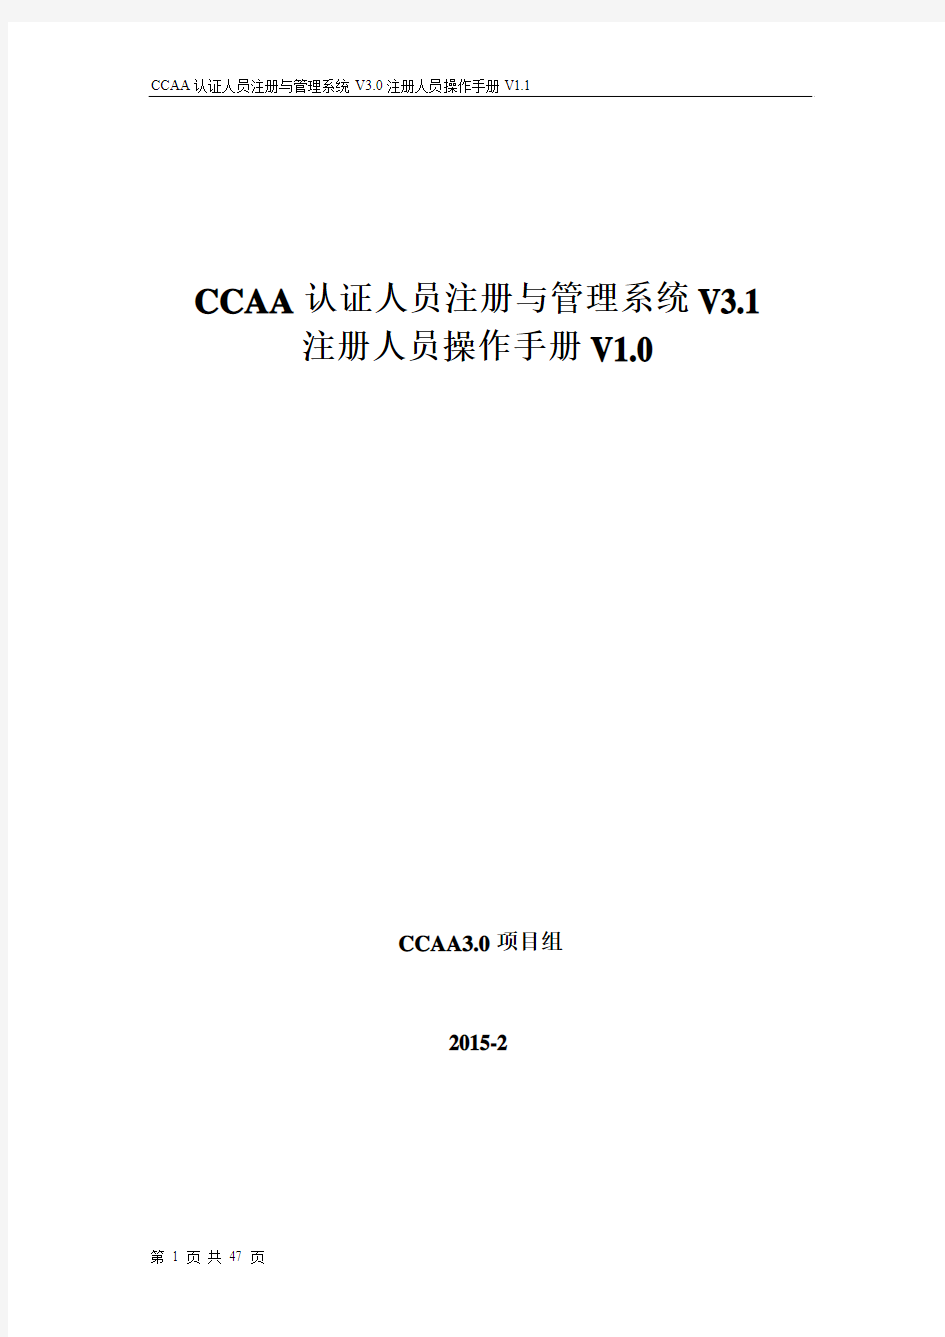 CCAA系统操作手册